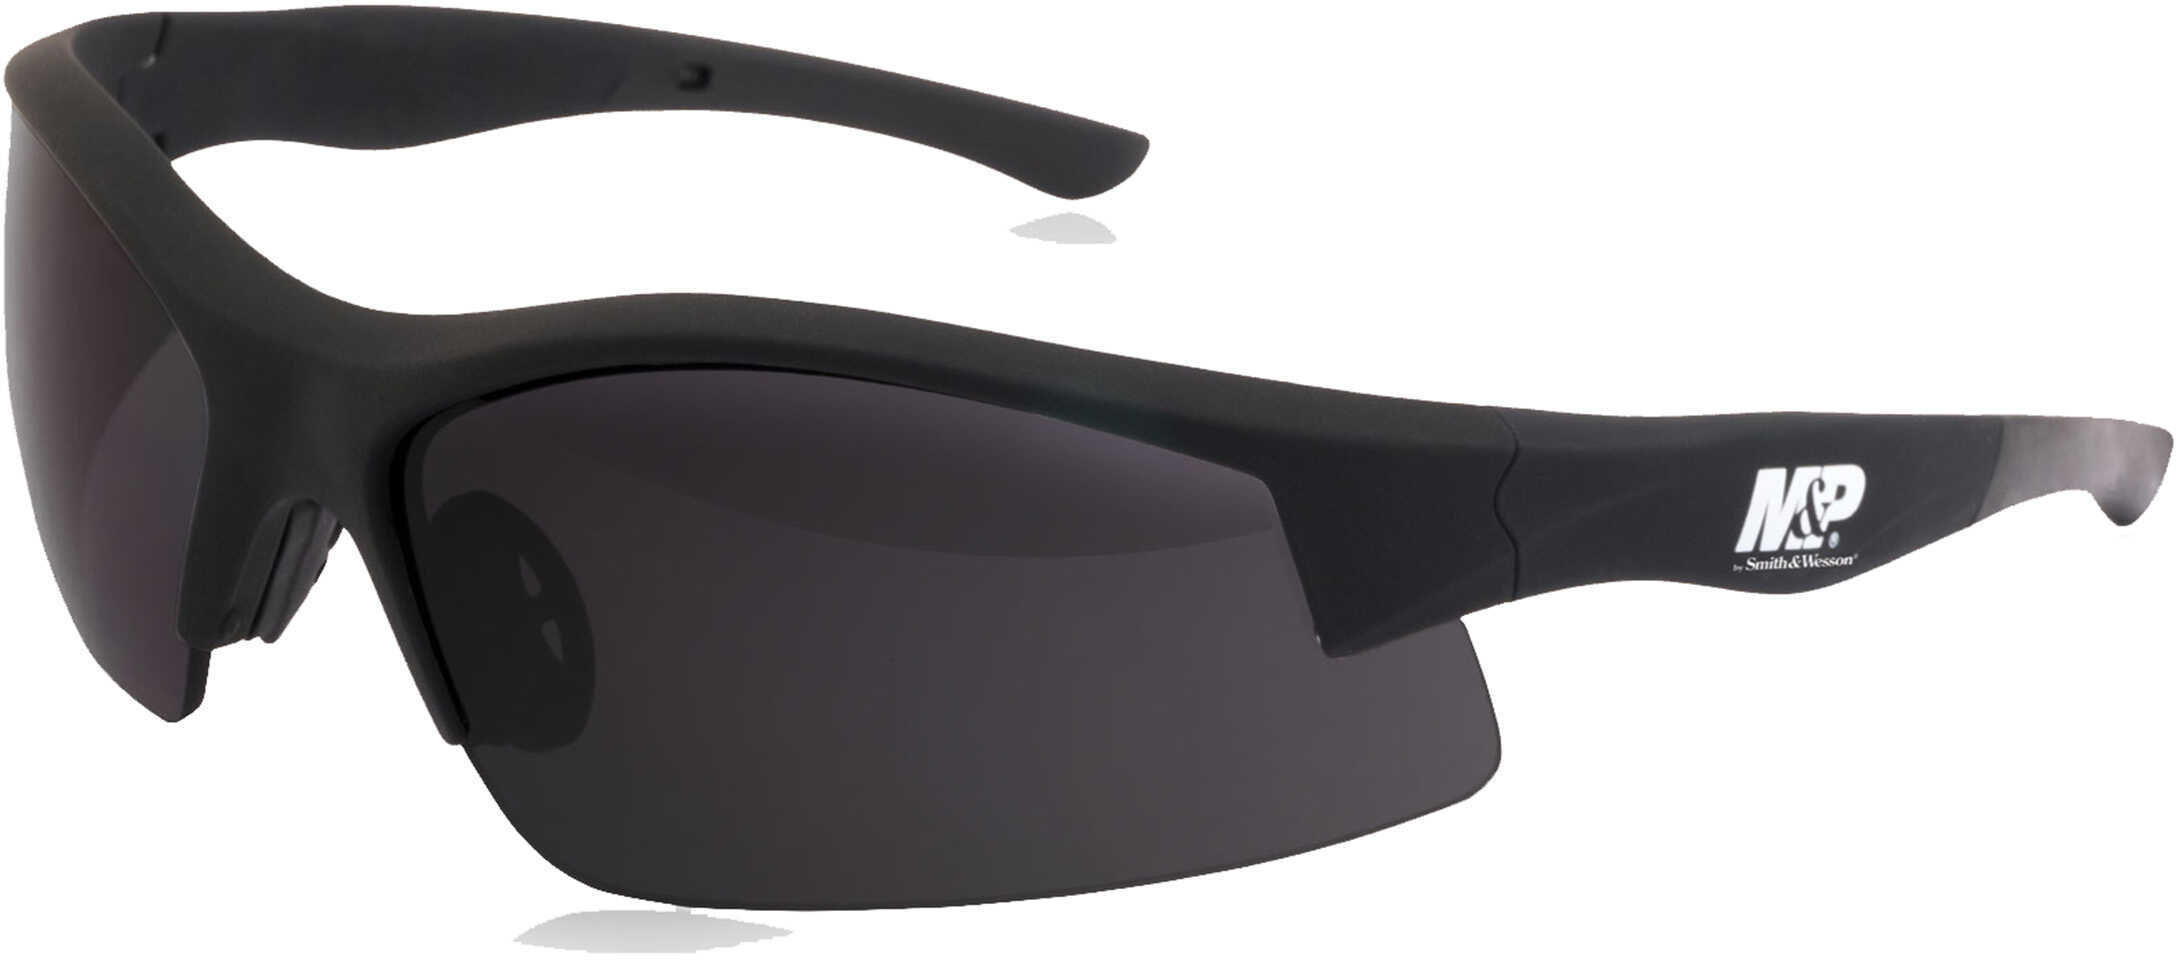 Smith & Wesson M&P Super Cobra Frame Shooting Glasses Black/Smoke